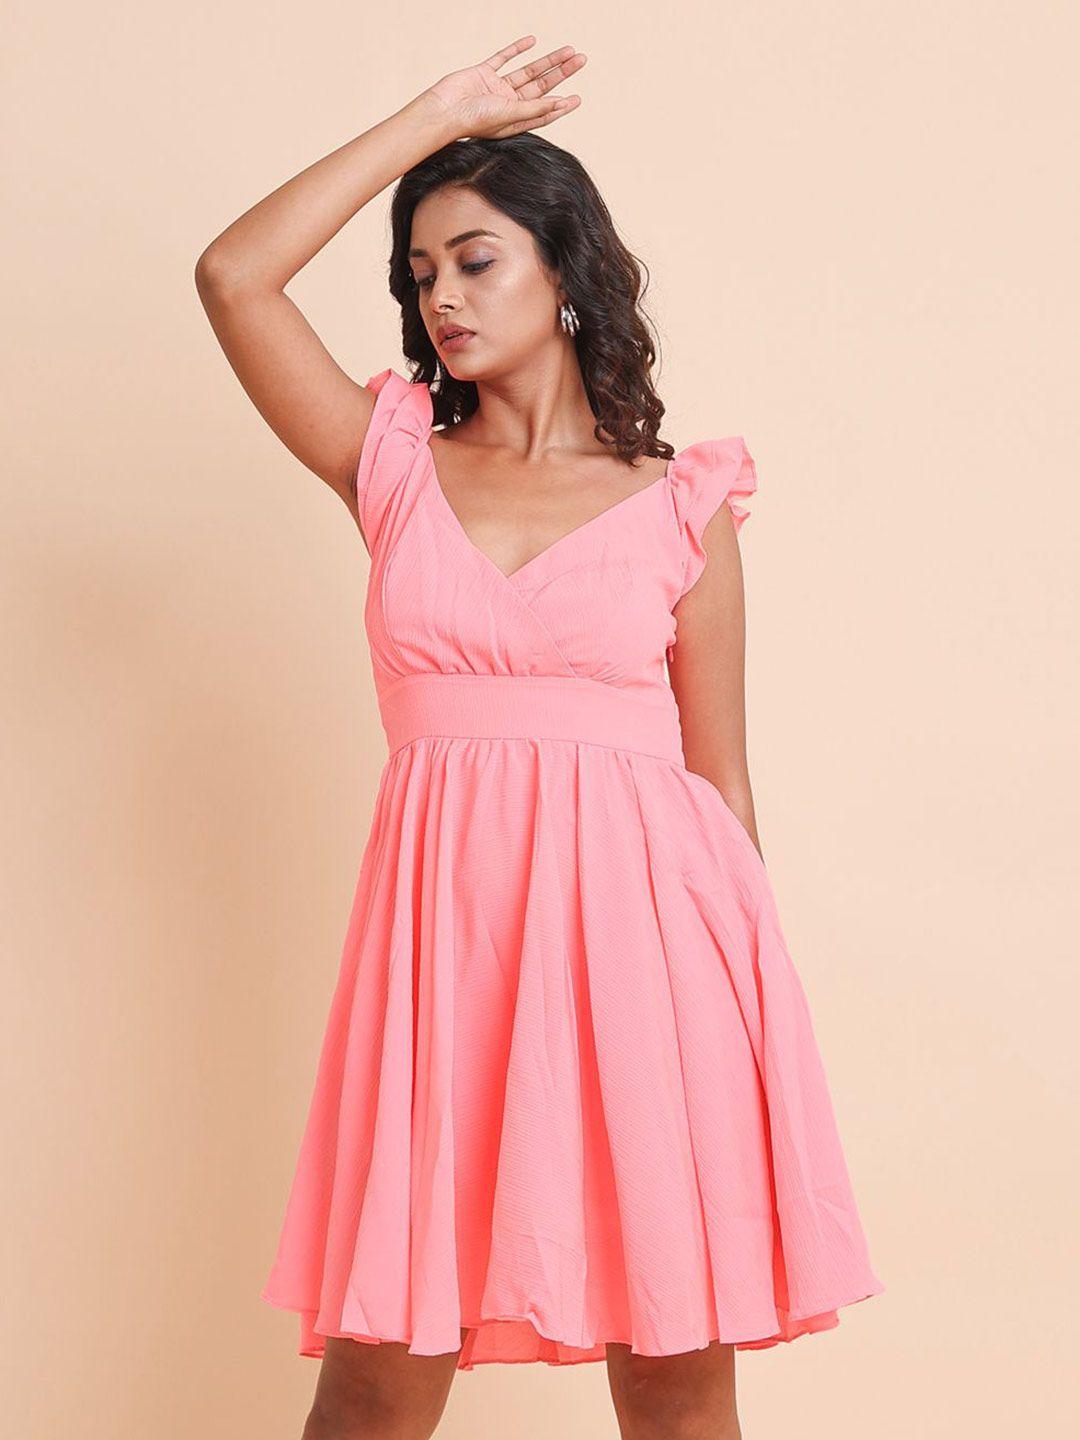 disli pink georgette fit & flare dress